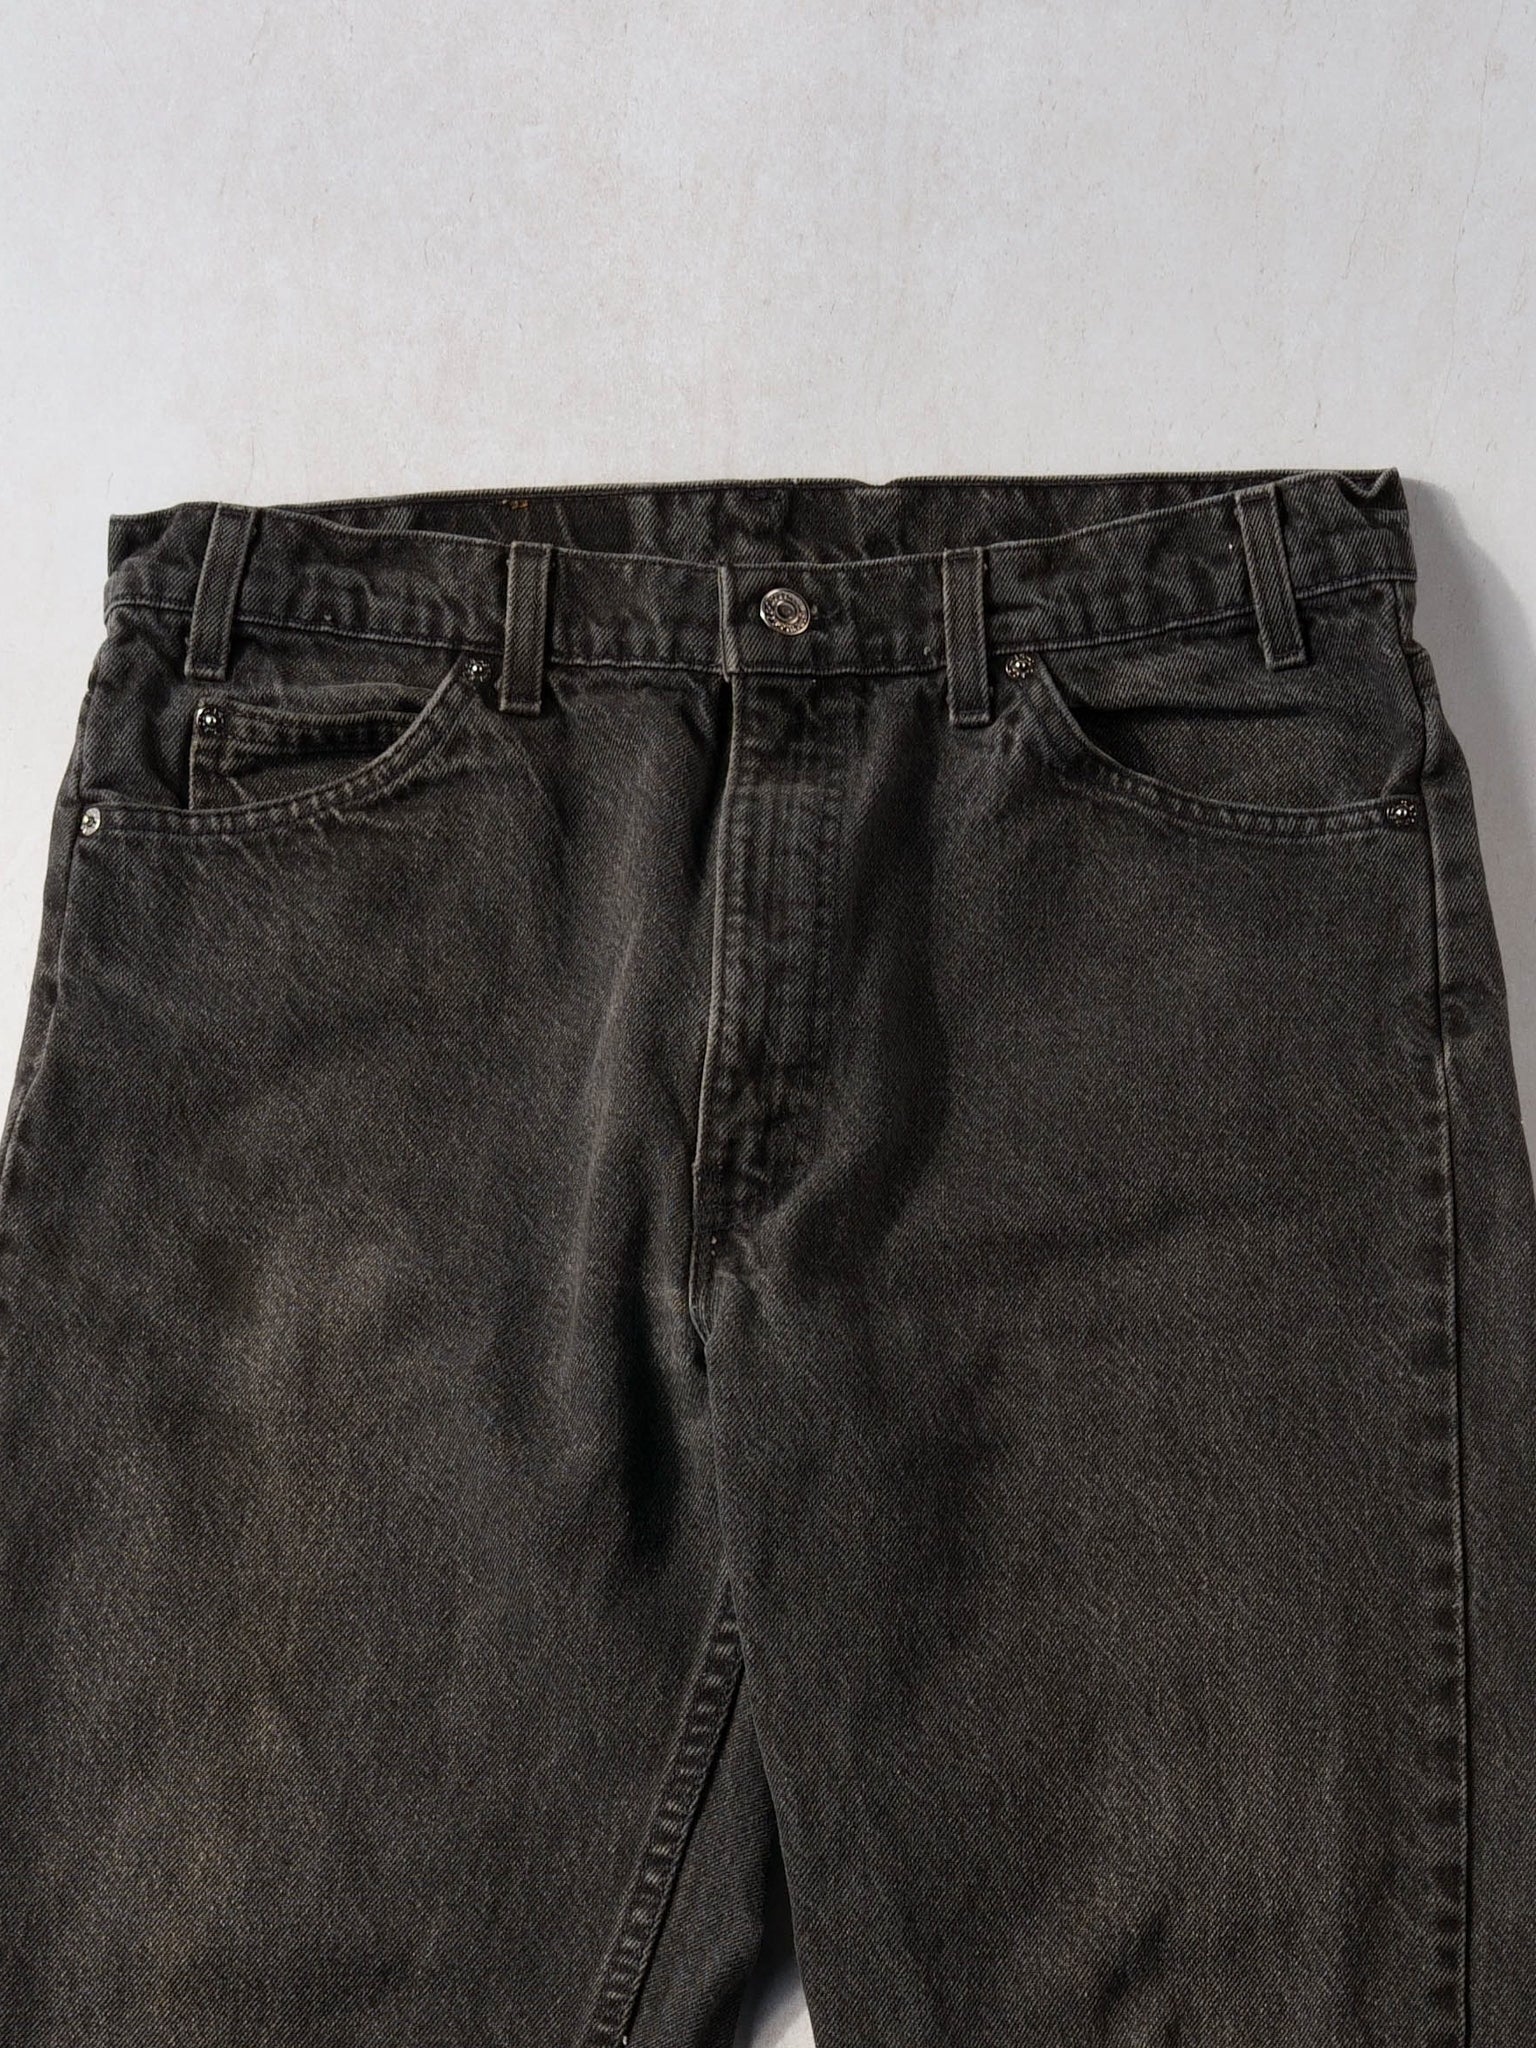 Vintage 70s Black Levi's 505 Denim Jeans (34x32)